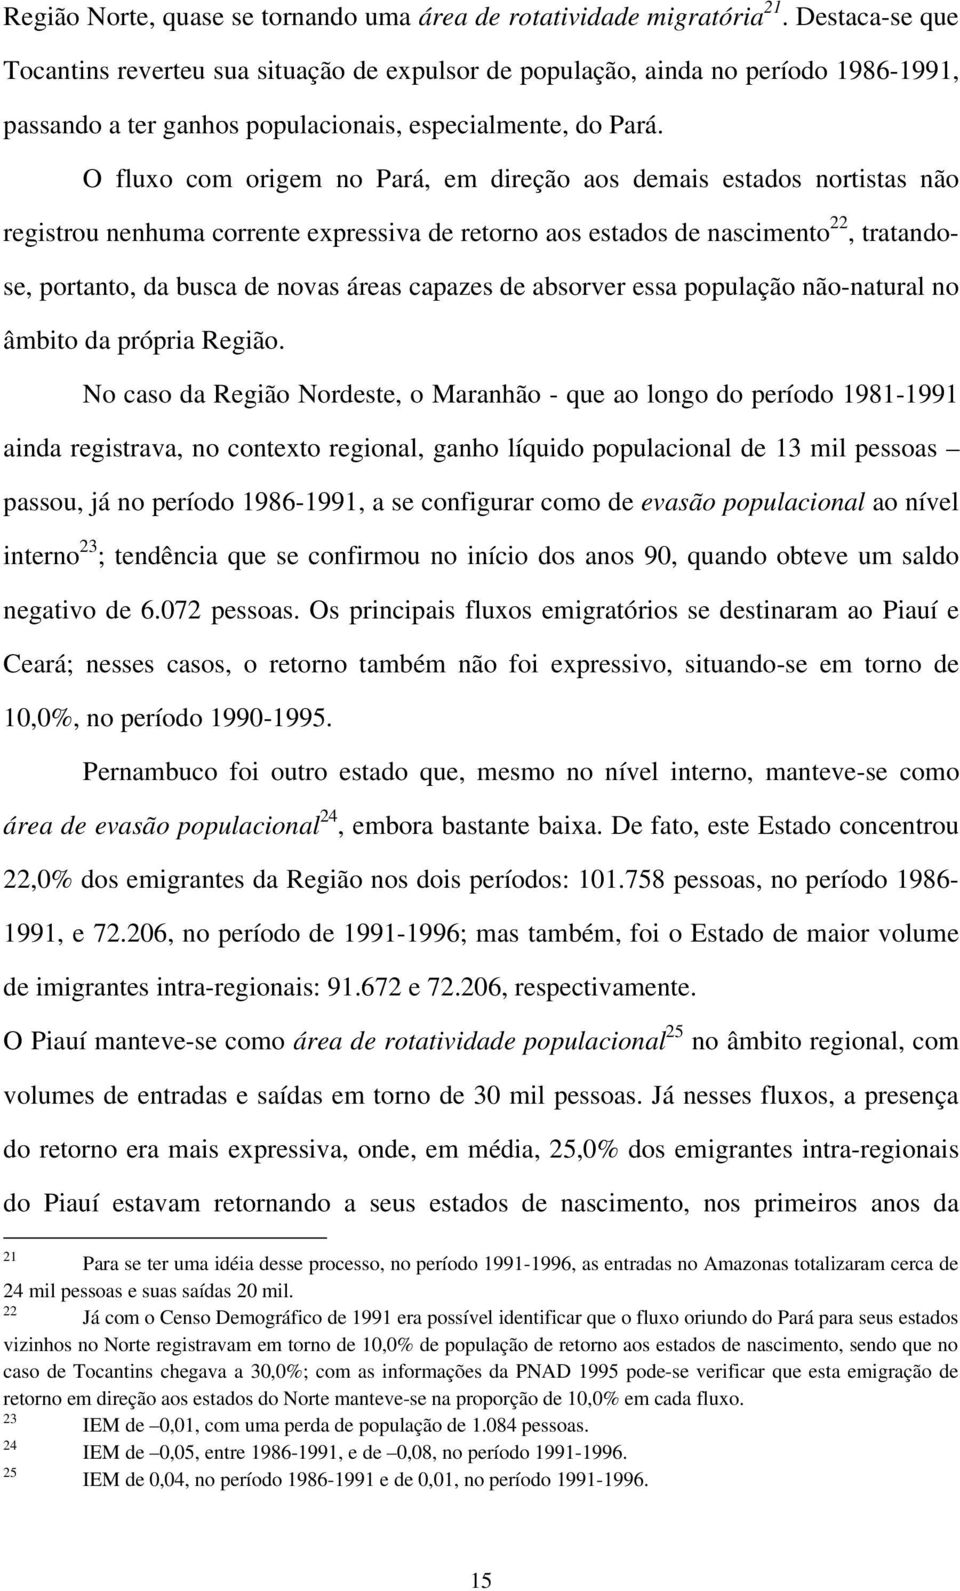 O fluxo com origem no Pará, em direção aos demais estados nortistas não registrou nenhuma corrente expressiva de retorno aos estados de nascimento 22, tratandose, portanto, da busca de novas áreas